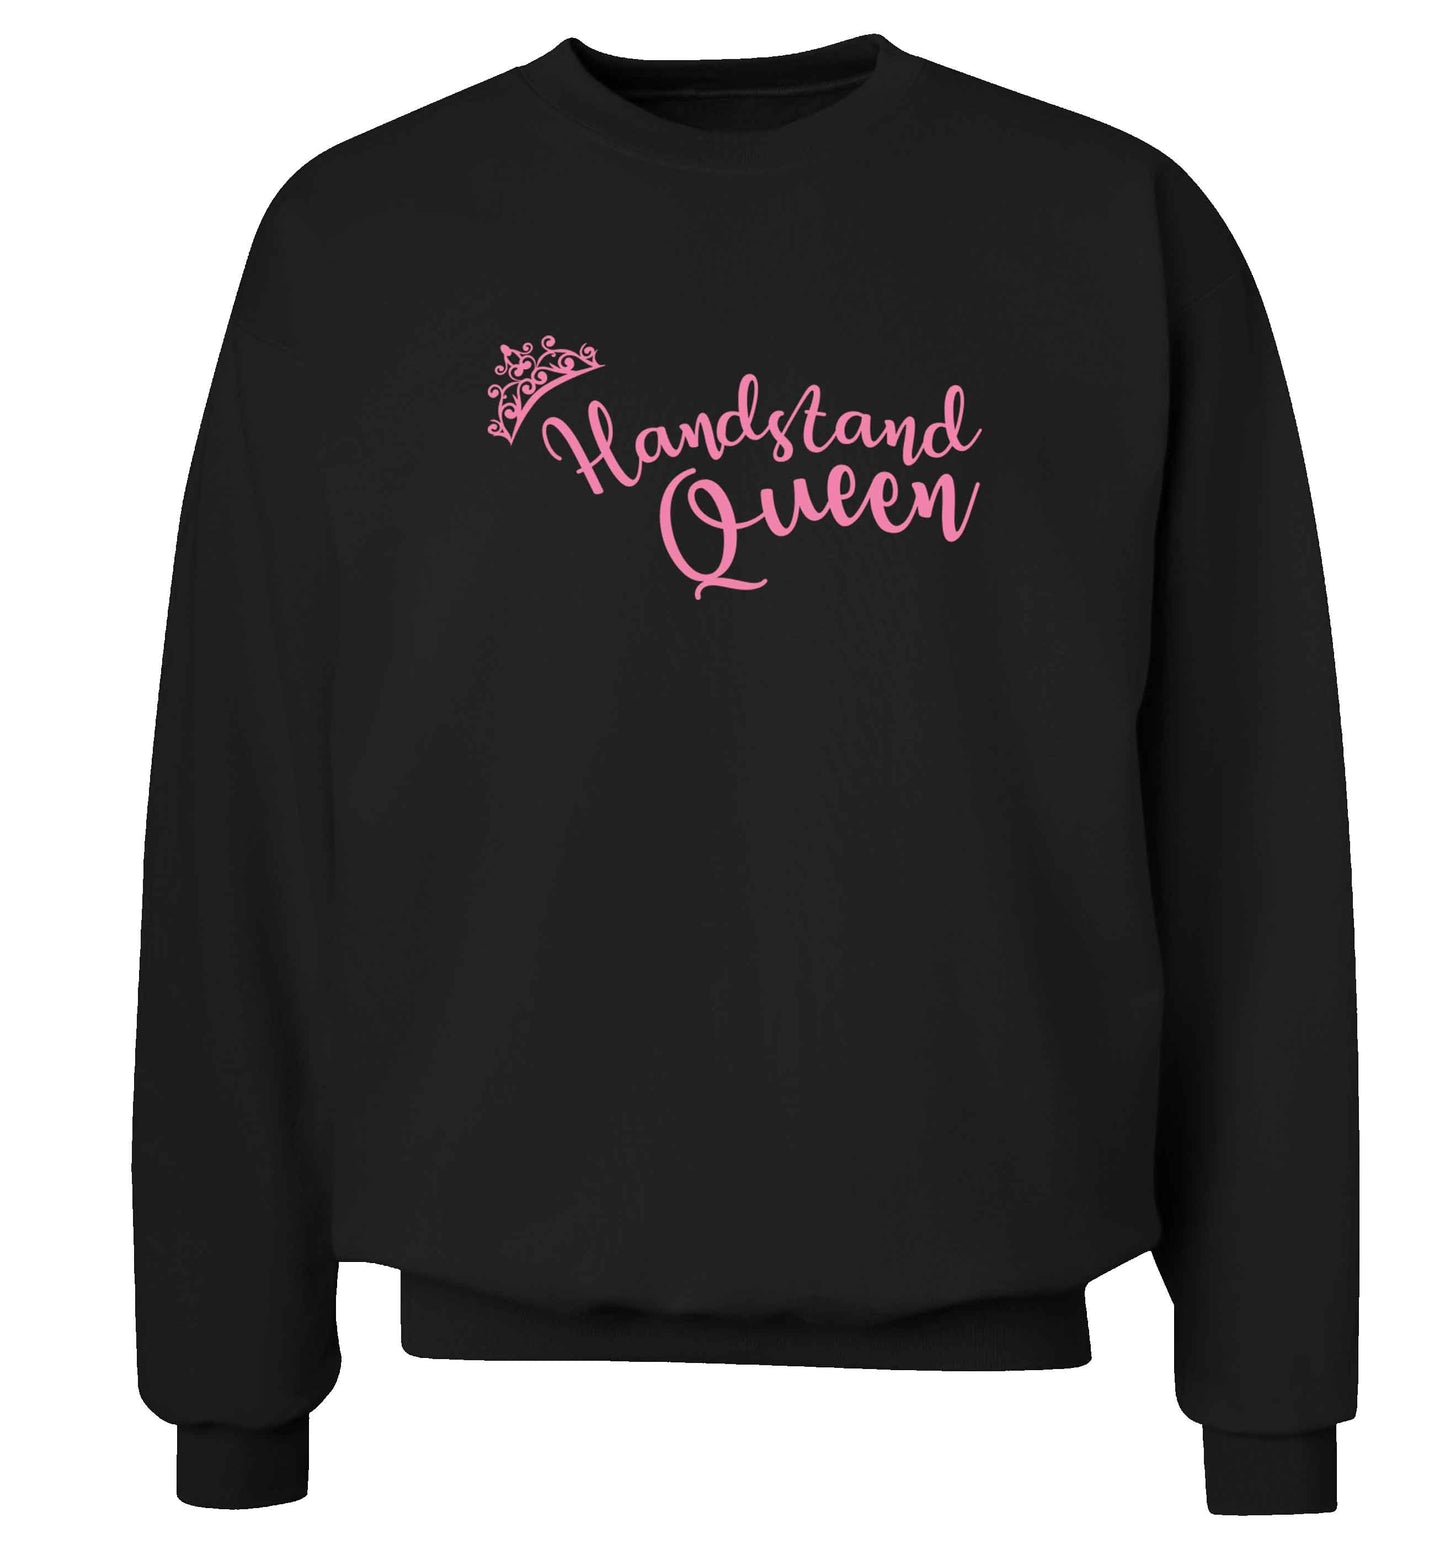 Handstand Queen Adult's unisex black Sweater 2XL